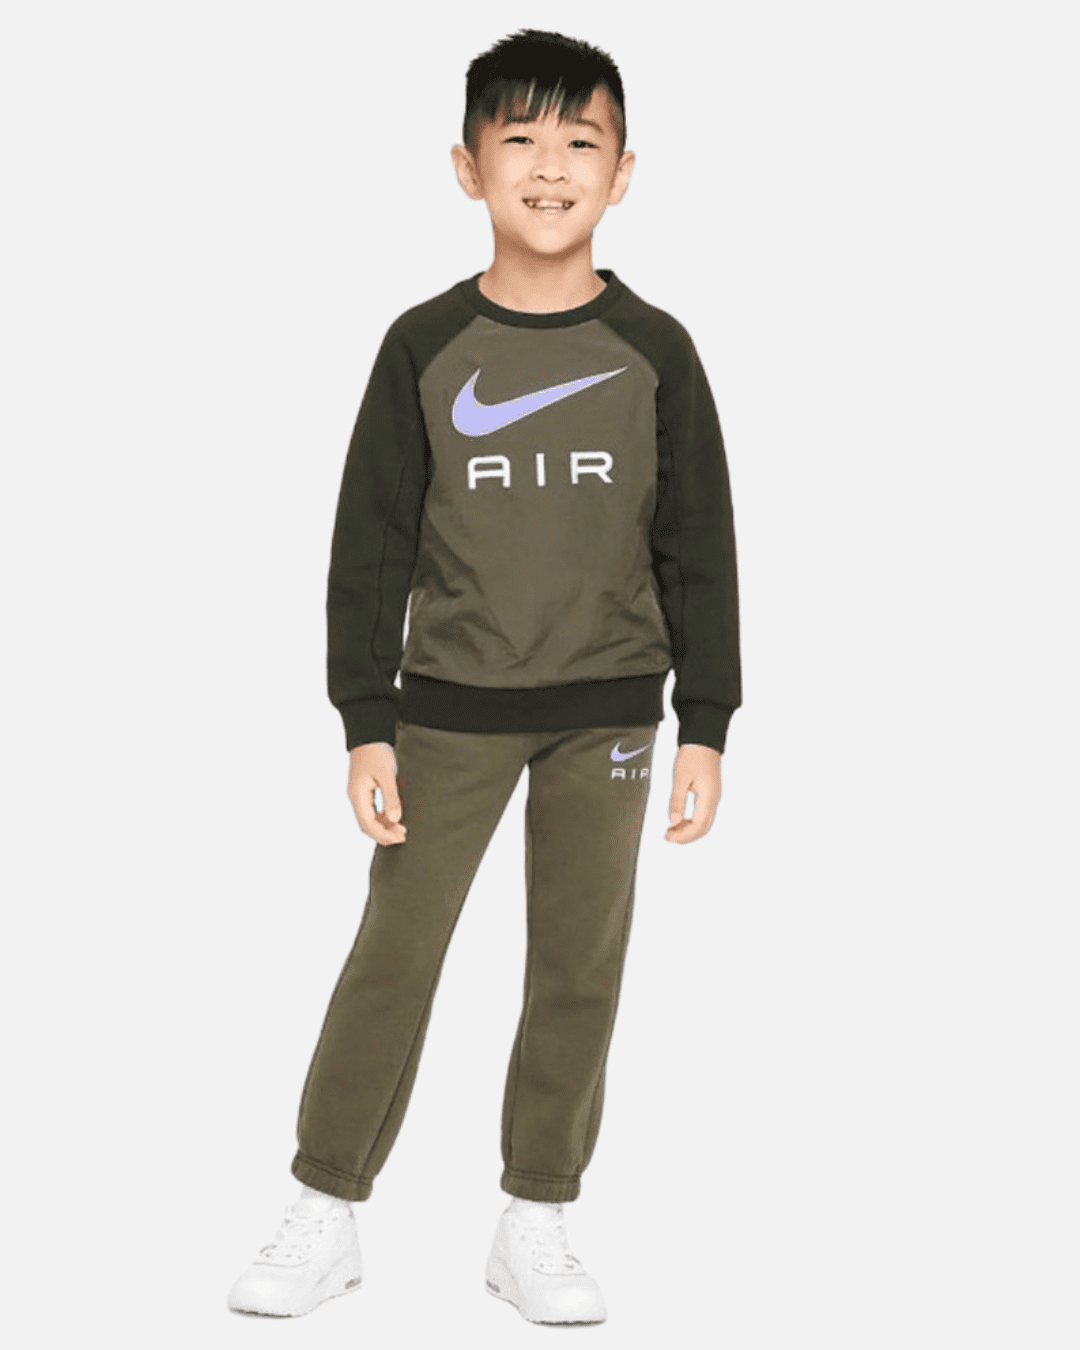 Completo sportivo per bambini Nike Air Crew - cachi